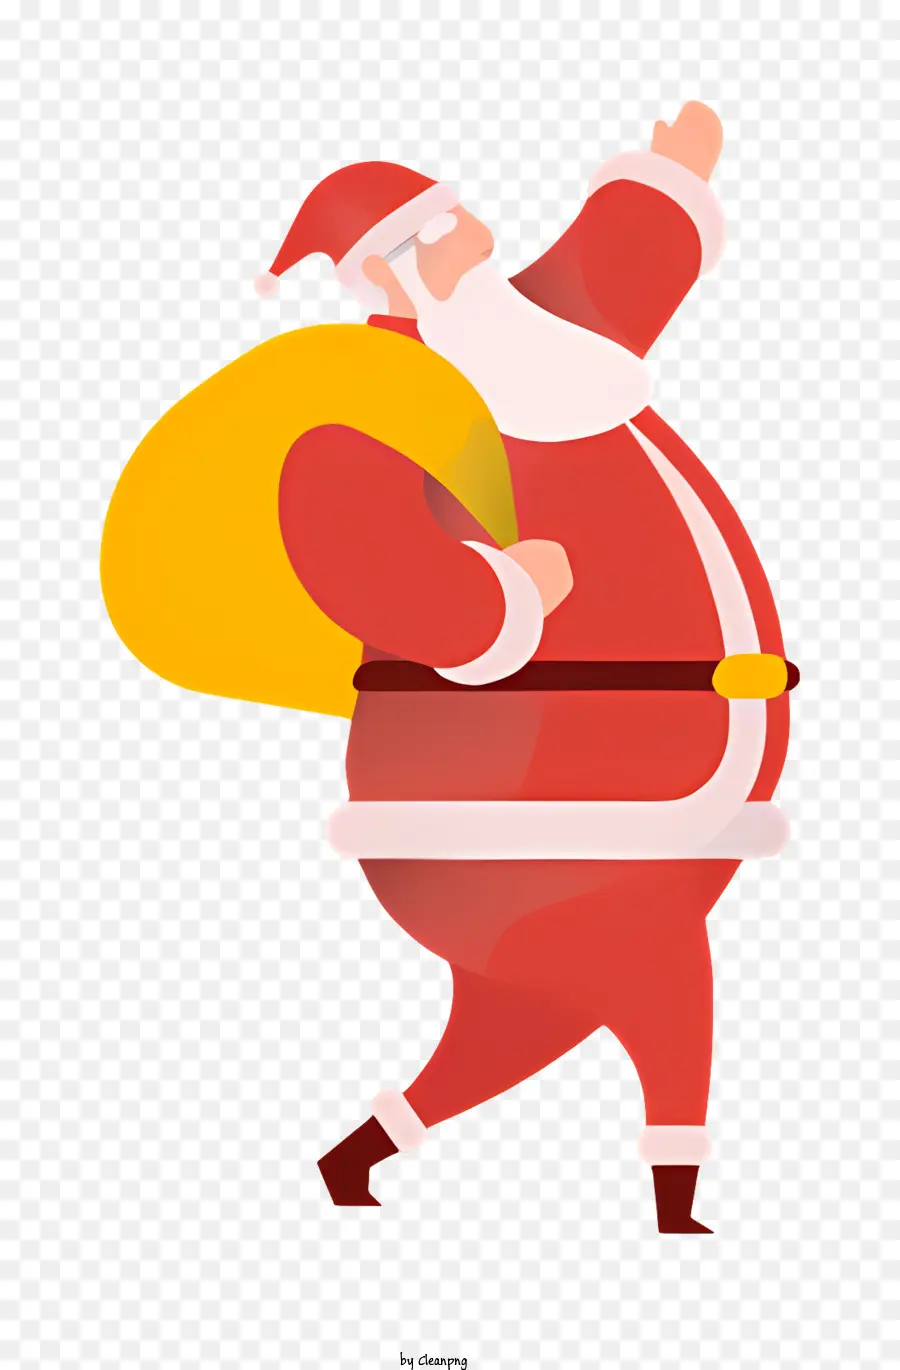 santa claus - Santa Claus trong bộ đồ màu đỏ với quà